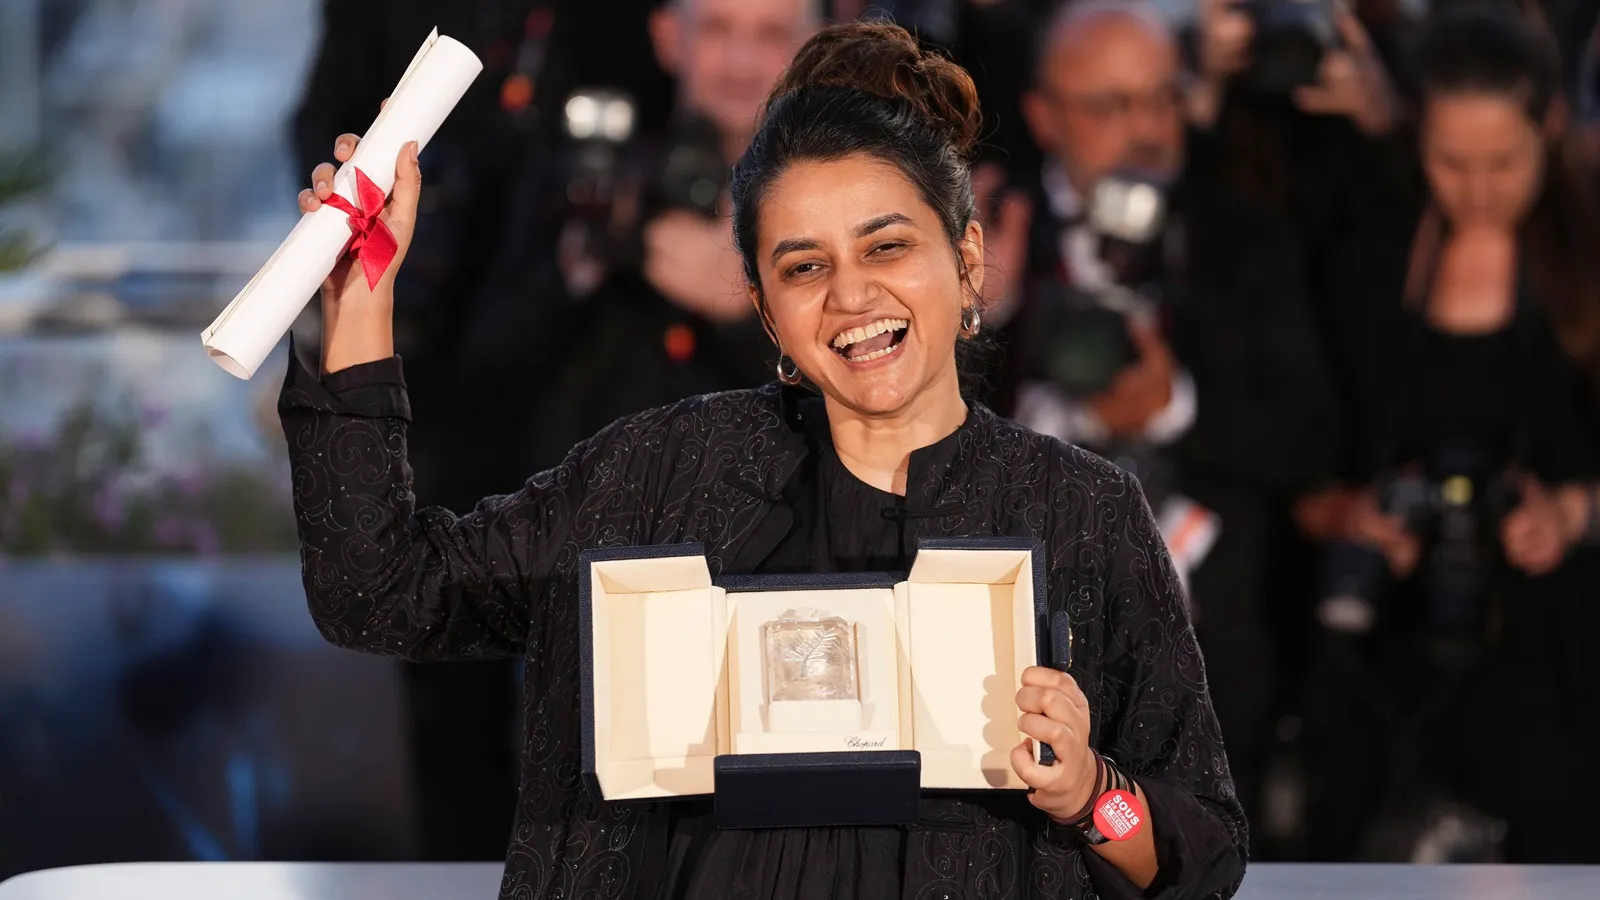 Payal Kapadia has won the Grand Prix at Cannes.